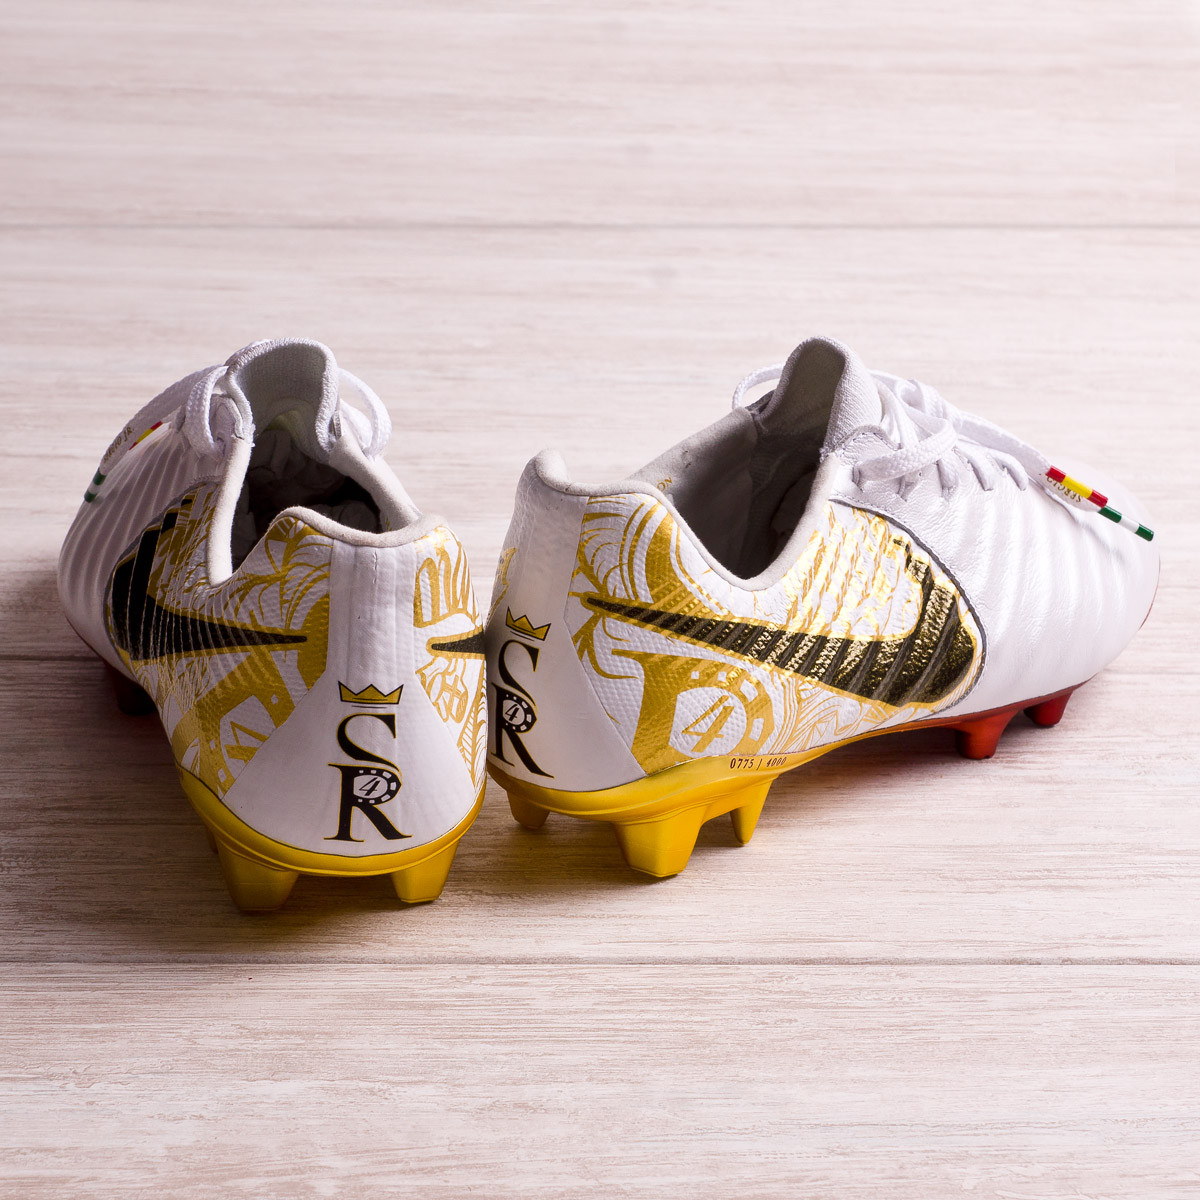 diferente a Ortografía acceso El capitán Sergio Ramos recibe botas exclusivas - Blogs - Fútbol Emotion